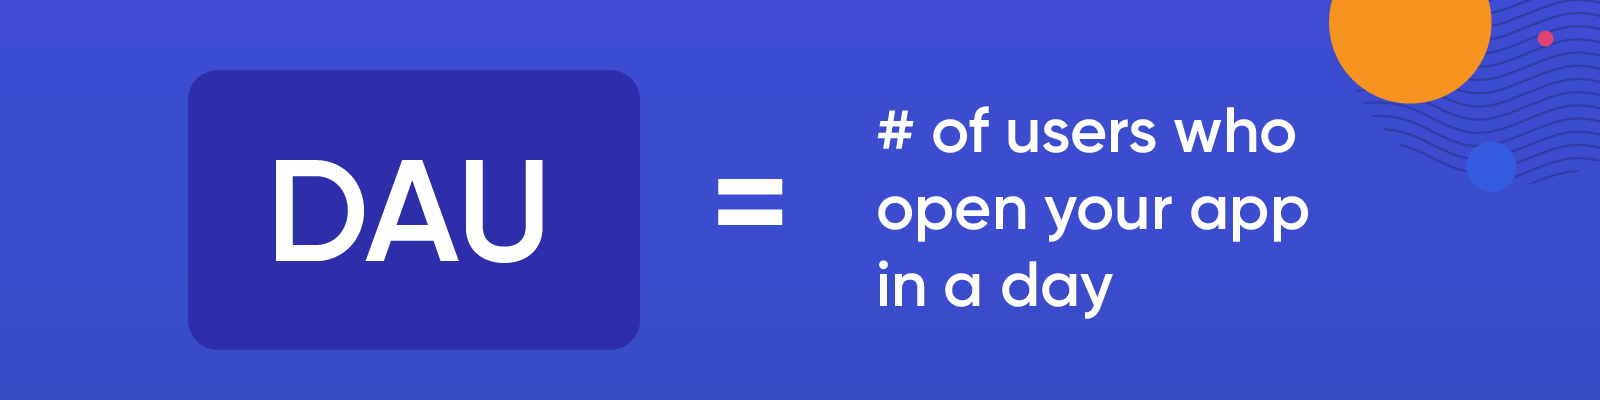 ¿Qué son las DAU? La cantidad de usuarios que abren su aplicación en un día.